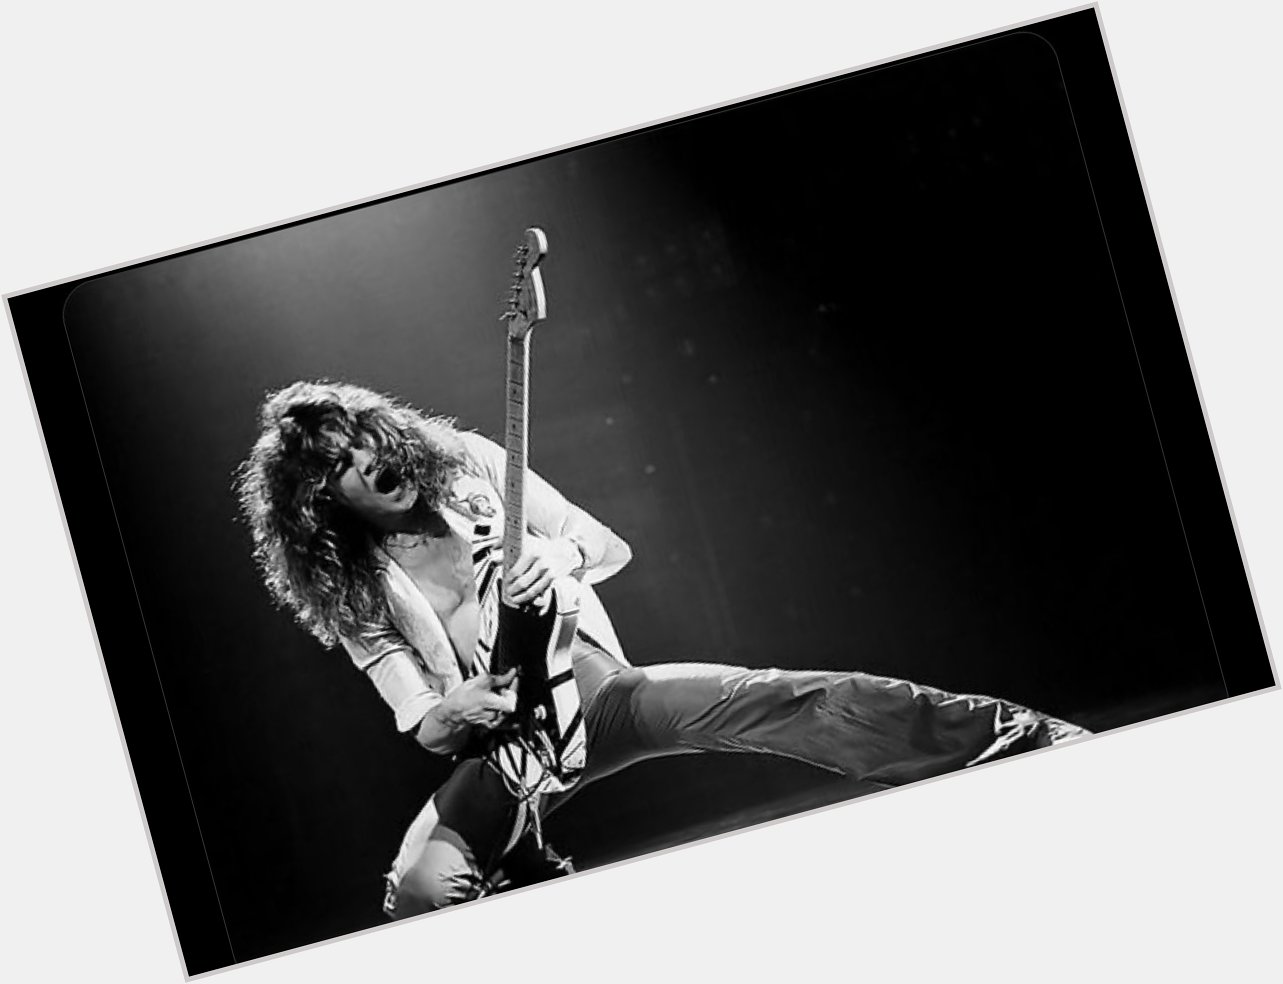 Happy birthday Eddie Van Halen!  Listen to this guitar-only I m The One      